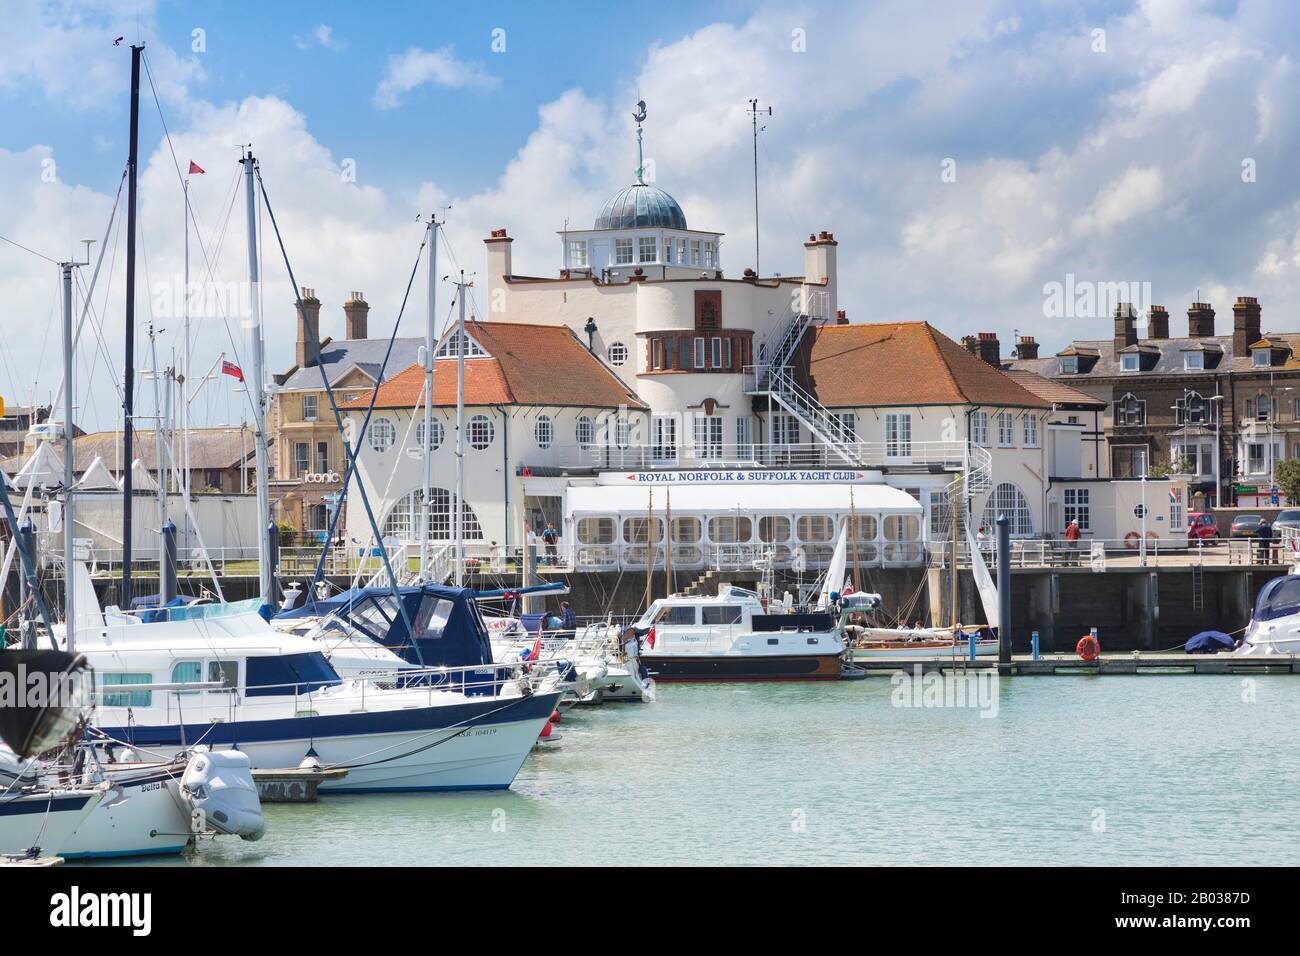 1 juin 2019 : Lowestaft, Suffolk, Royaume-Uni - Royal Norfolk et Suffolk Yacht Club, et bateaux dans le port. Banque D'Images